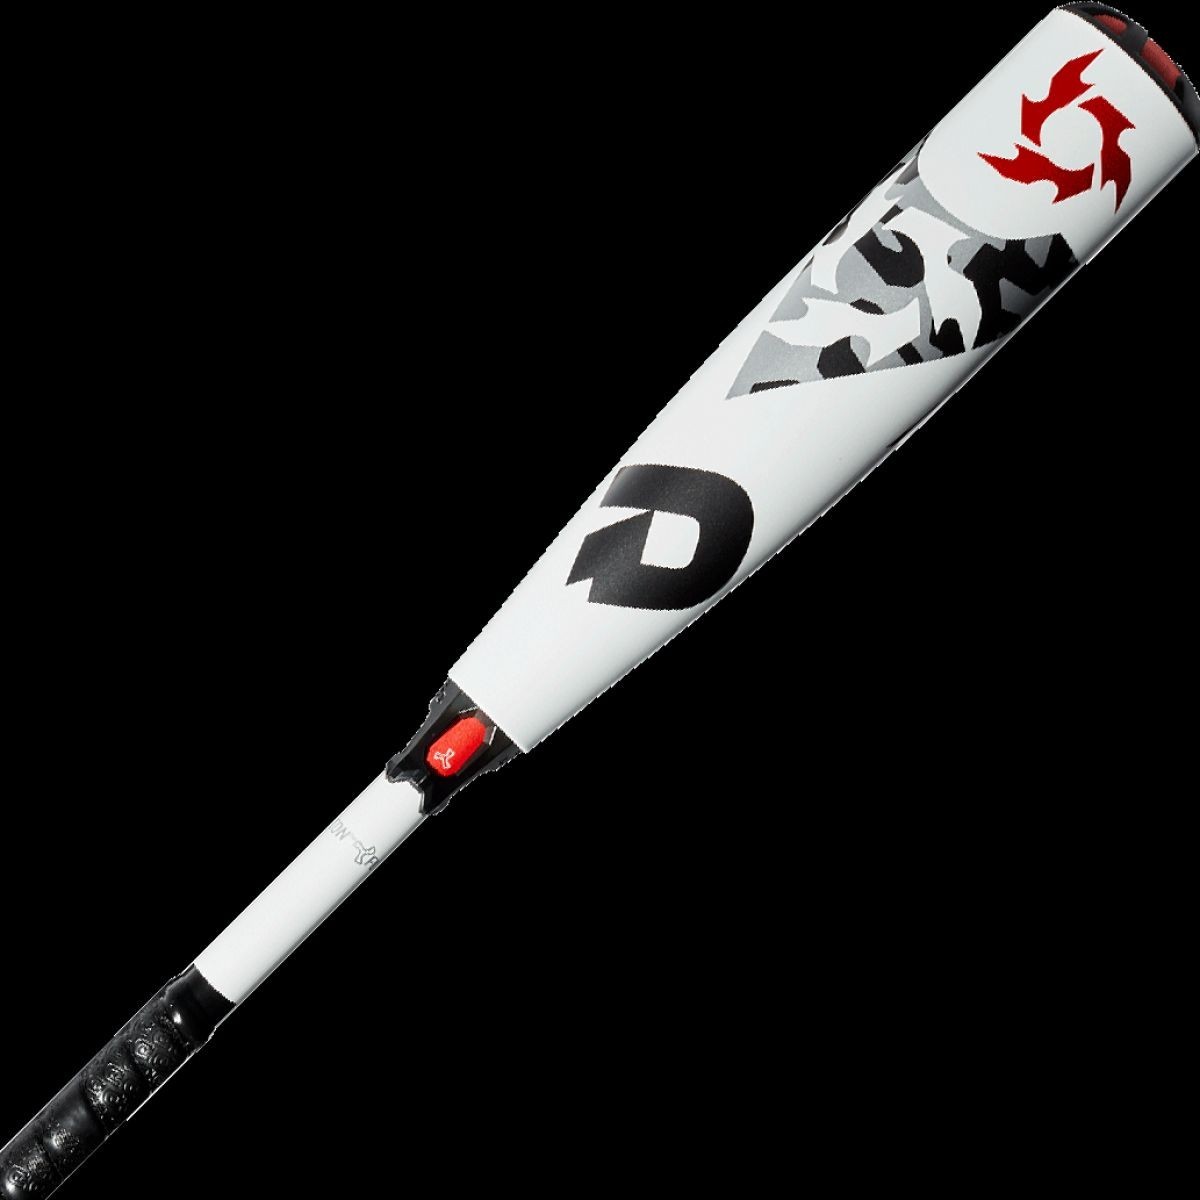 DeMarini 2020 Voodoo 10 USSSA Baseball Bat (2 3/4")